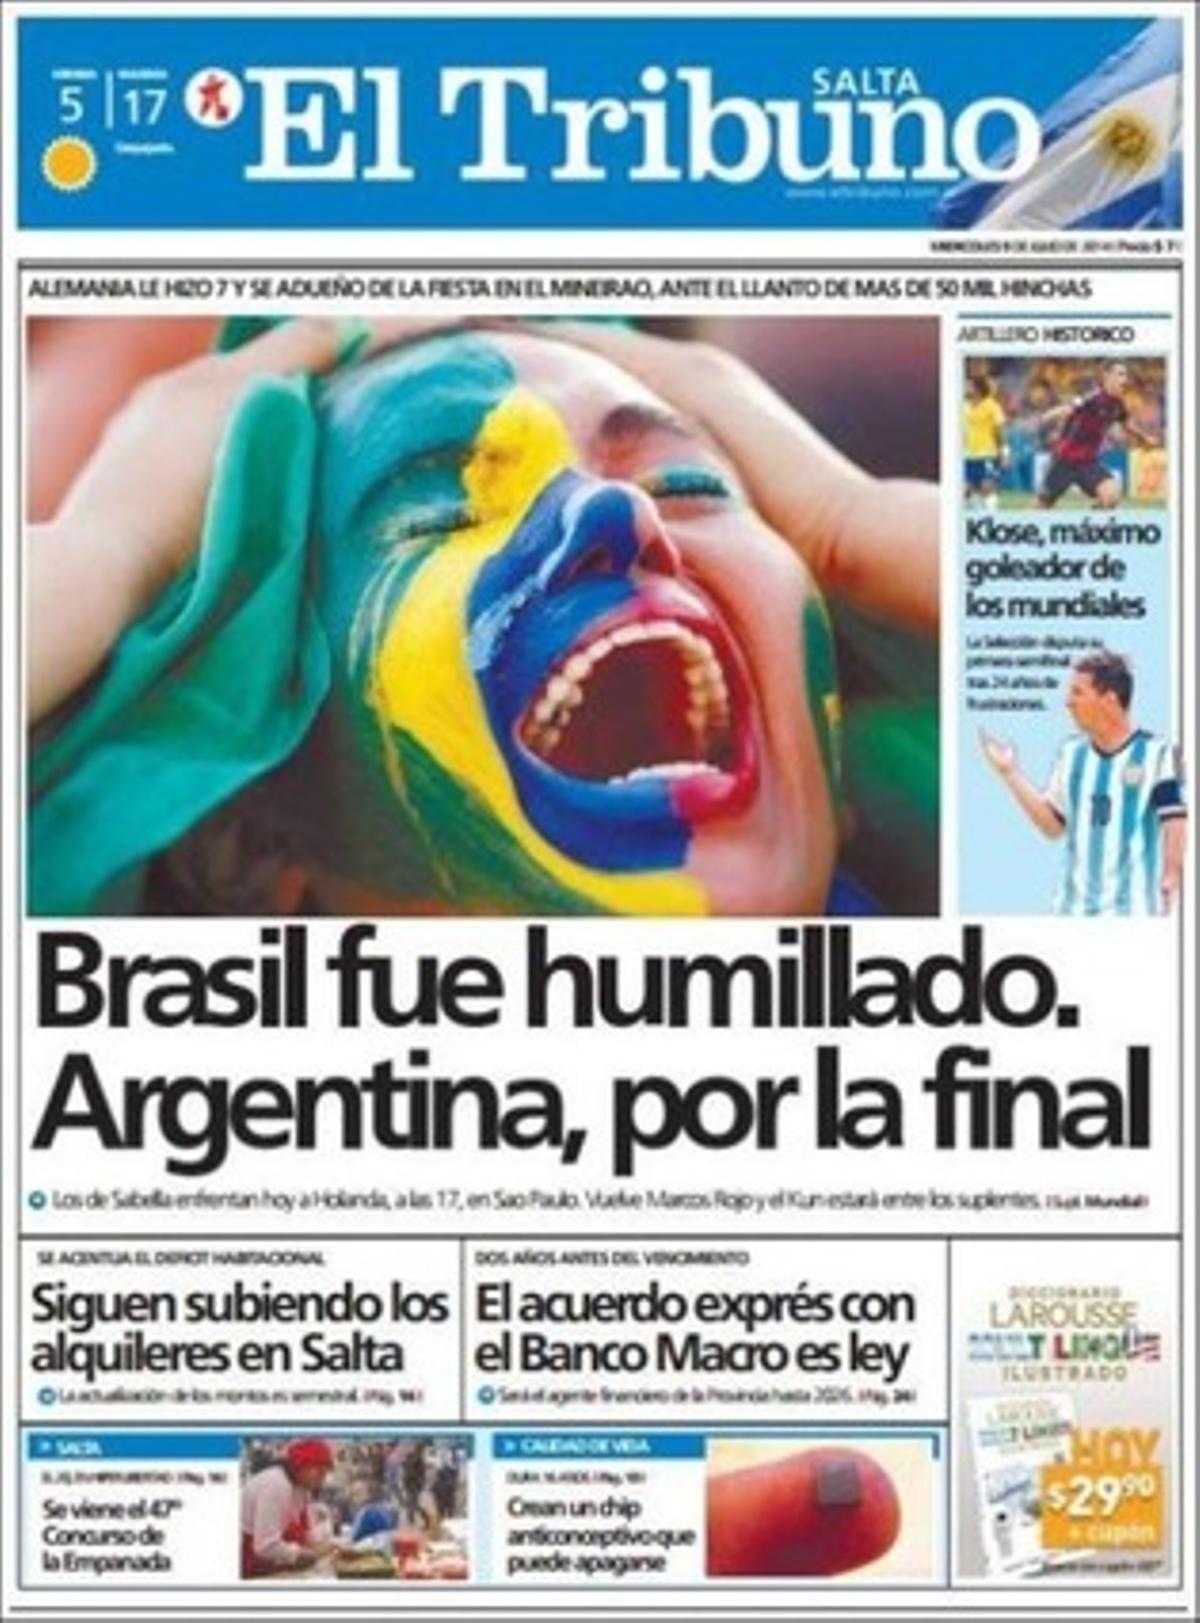 La humiliació del Brasil i l’esperança de l’Argentina, a ’El Tribuno’.